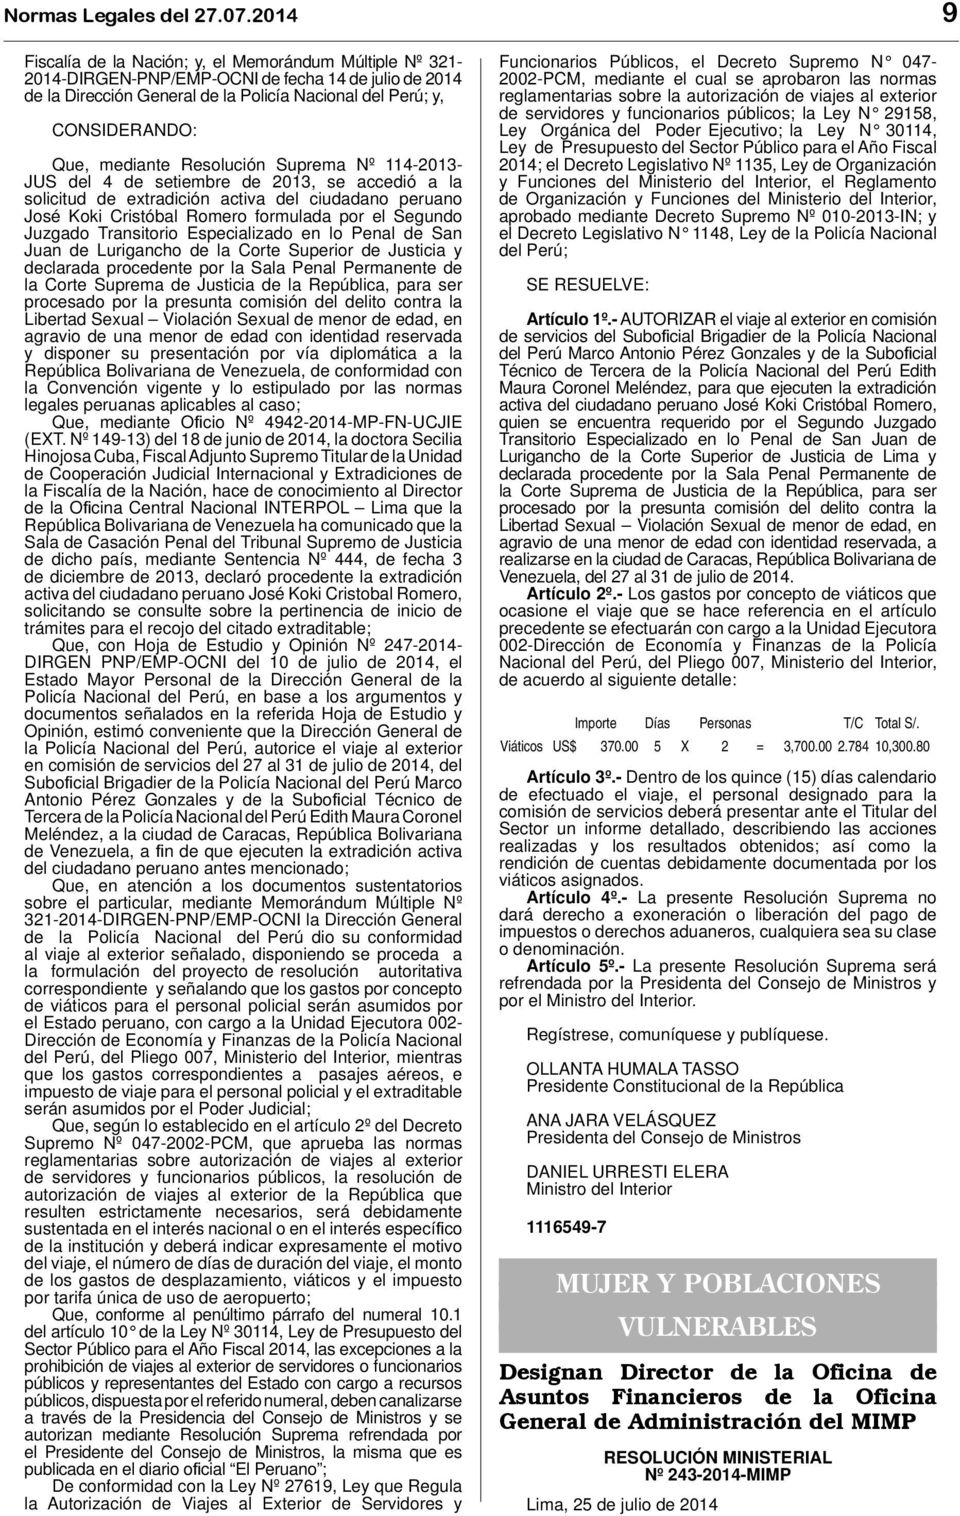 Resolución Suprema Nº 114-2013- JUS del 4 de setiembre de 2013, se accedió a la solicitud de extradición activa del ciudadano peruano José Koki Cristóbal Romero formulada por el Segundo Juzgado